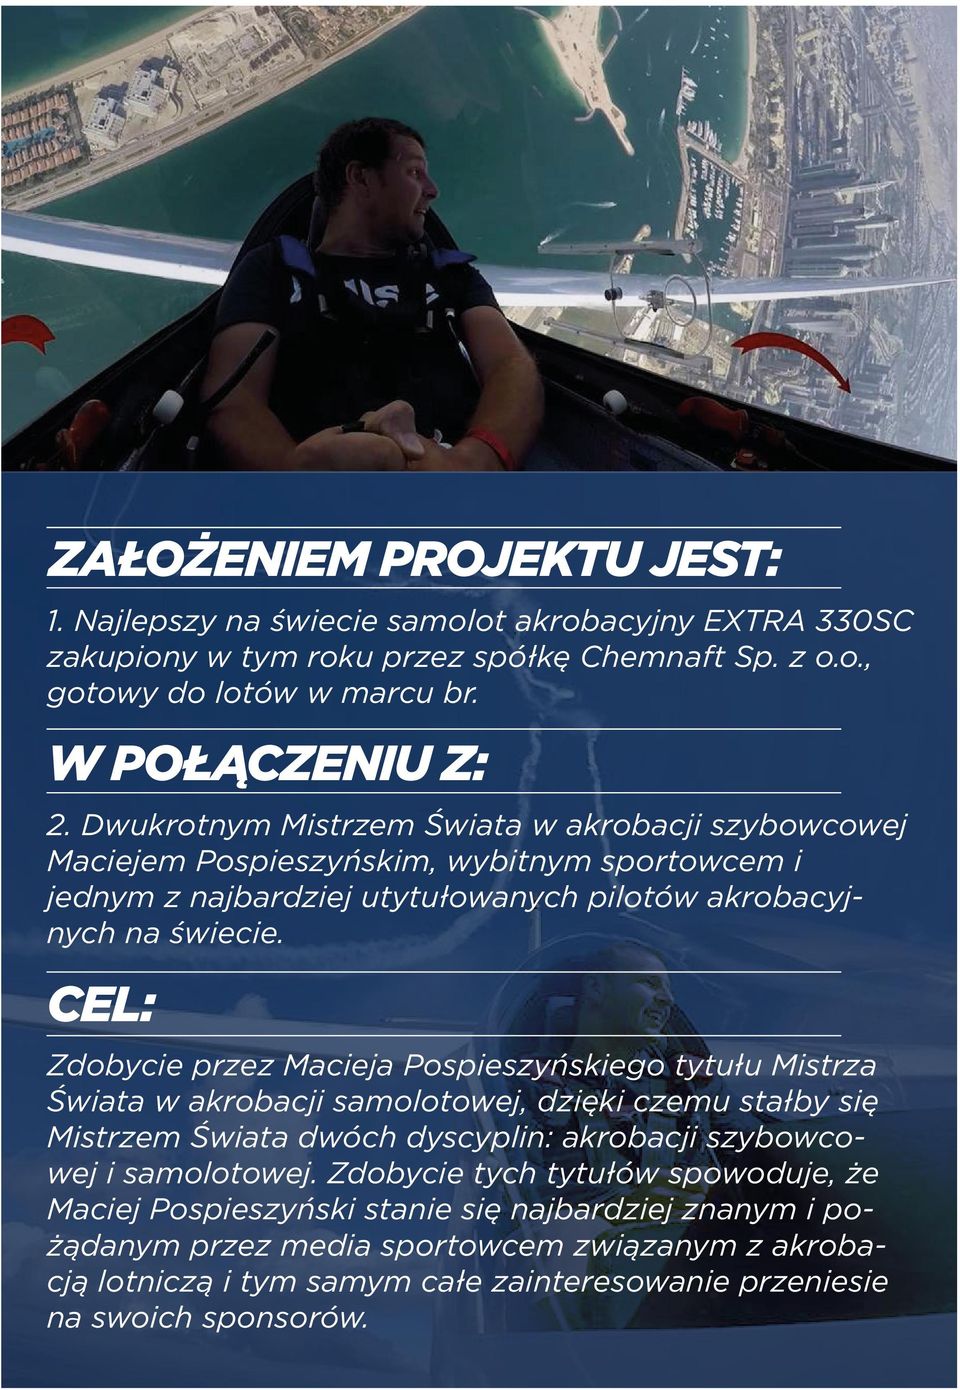 CEL: Zdobycie przez Macieja Pospieszyńskiego tytułu Mistrza Świata w akrobacji samolotowej, dzięki czemu stałby się Mistrzem Świata dwóch dyscyplin: akrobacji szybowcowej i samolotowej.